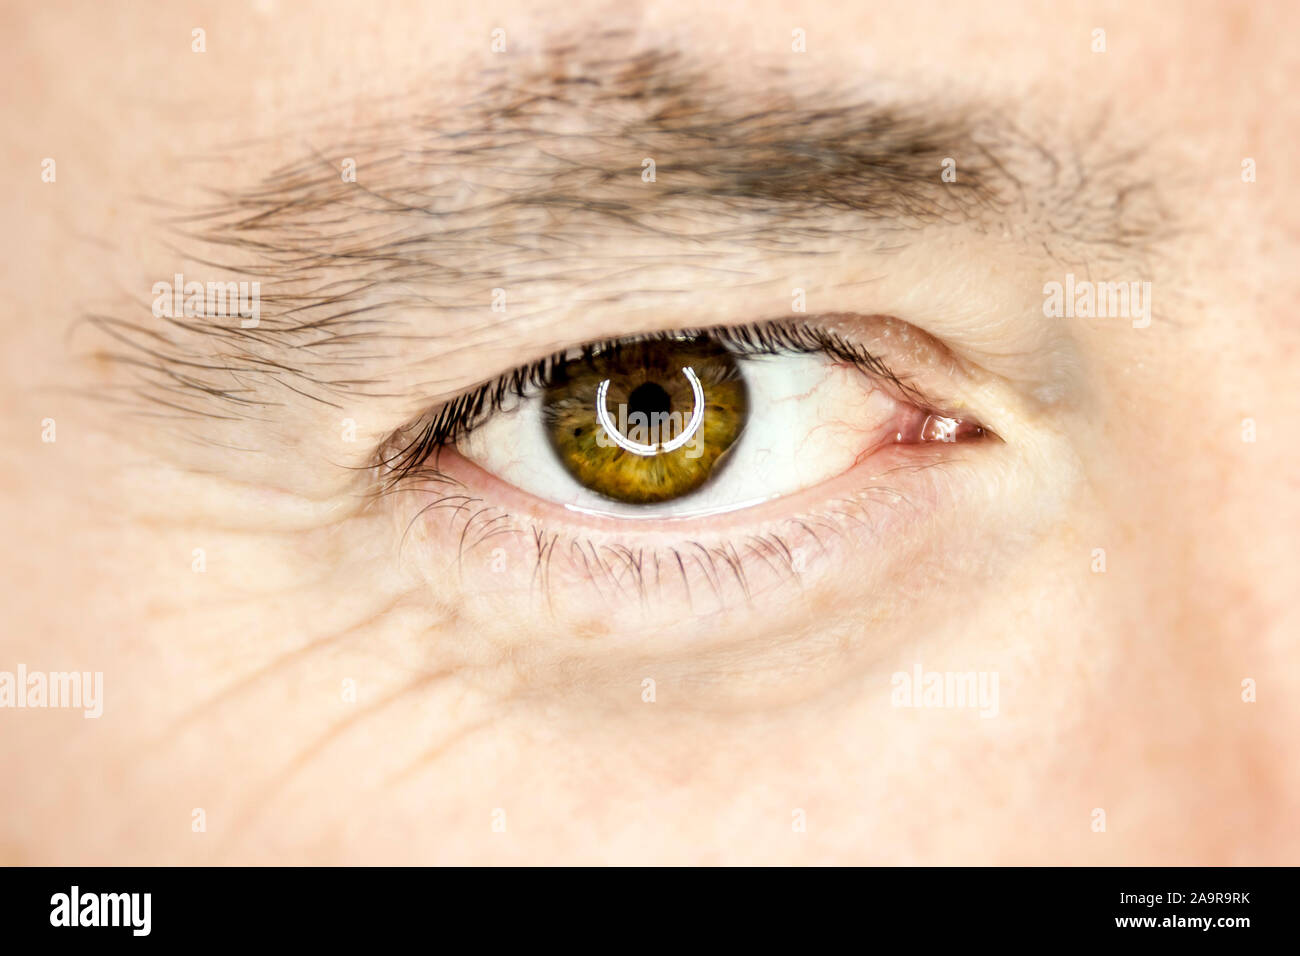 Das braune Auge eines Mannes Stock Photo